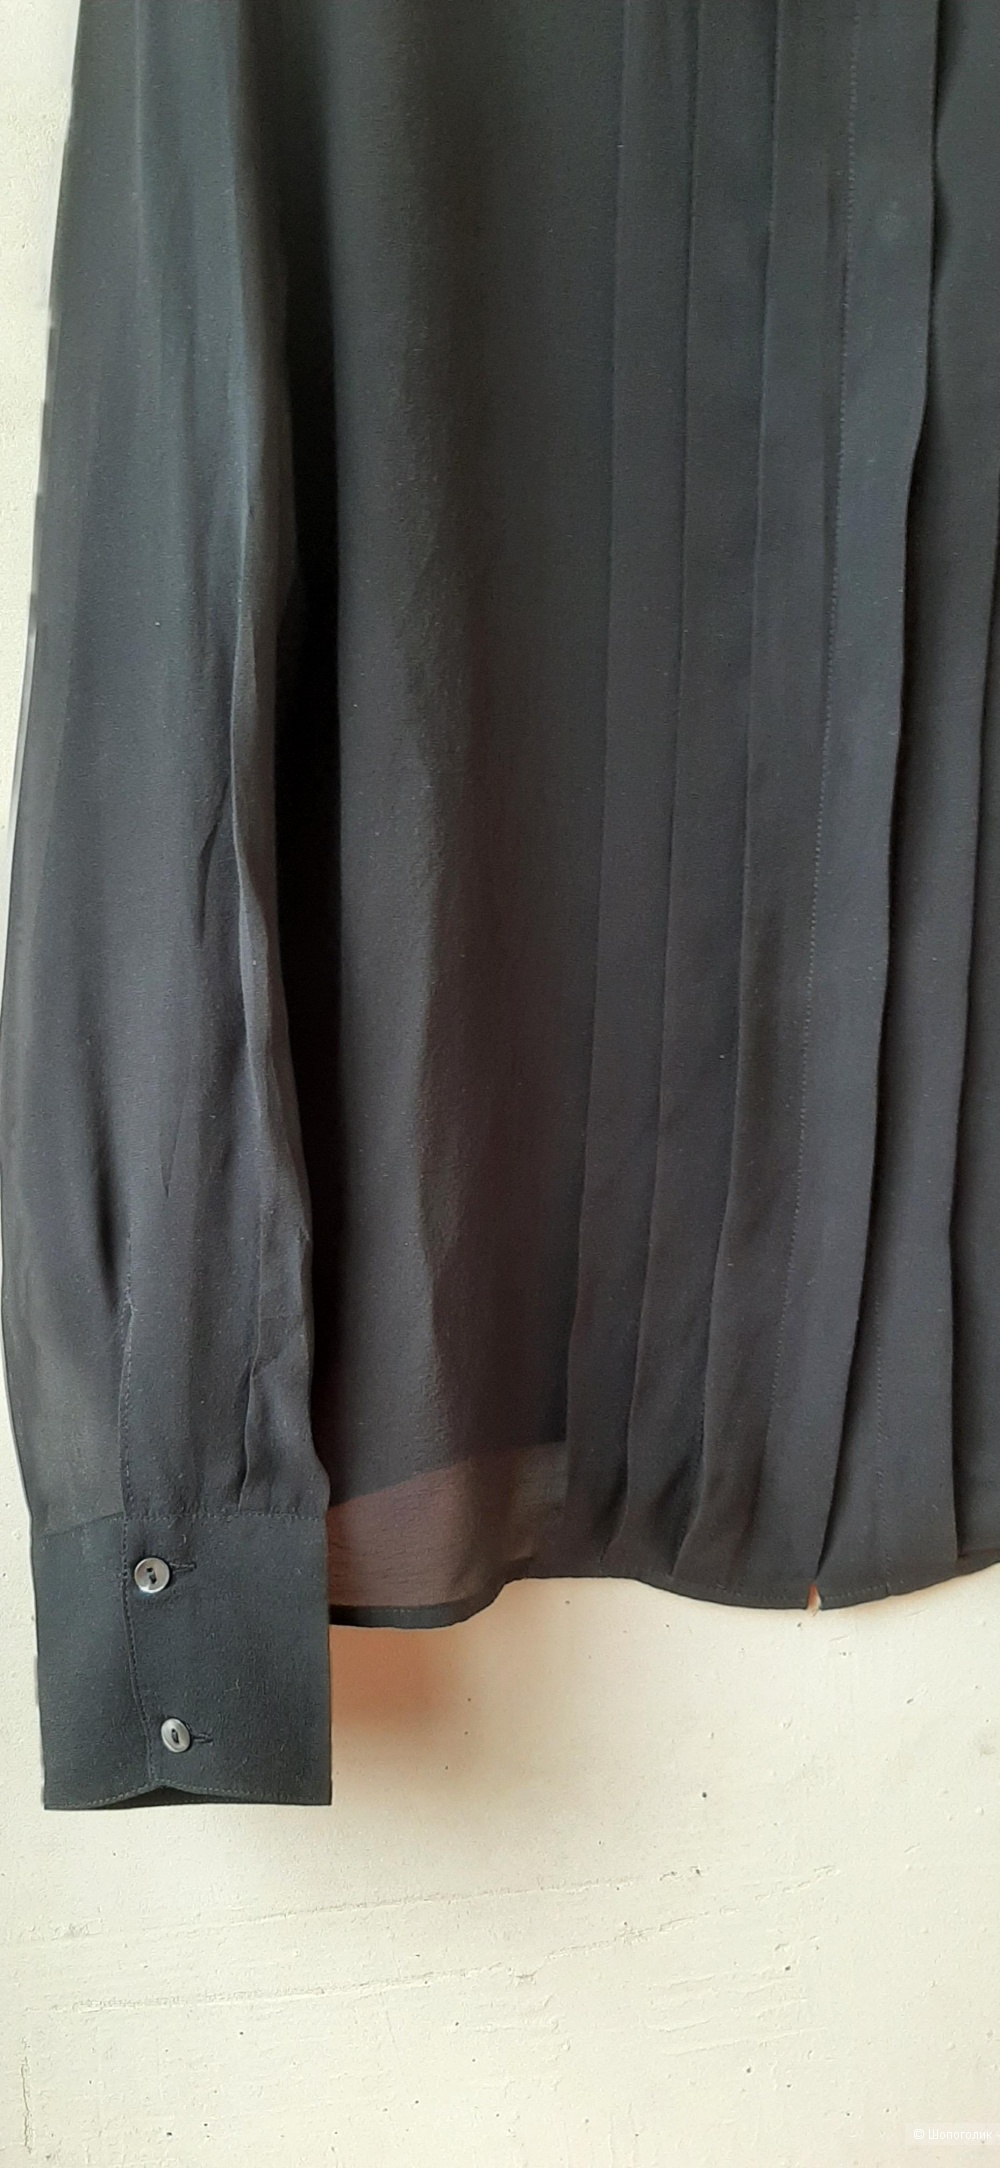 Шелковая блуза Marlin, 50 размер